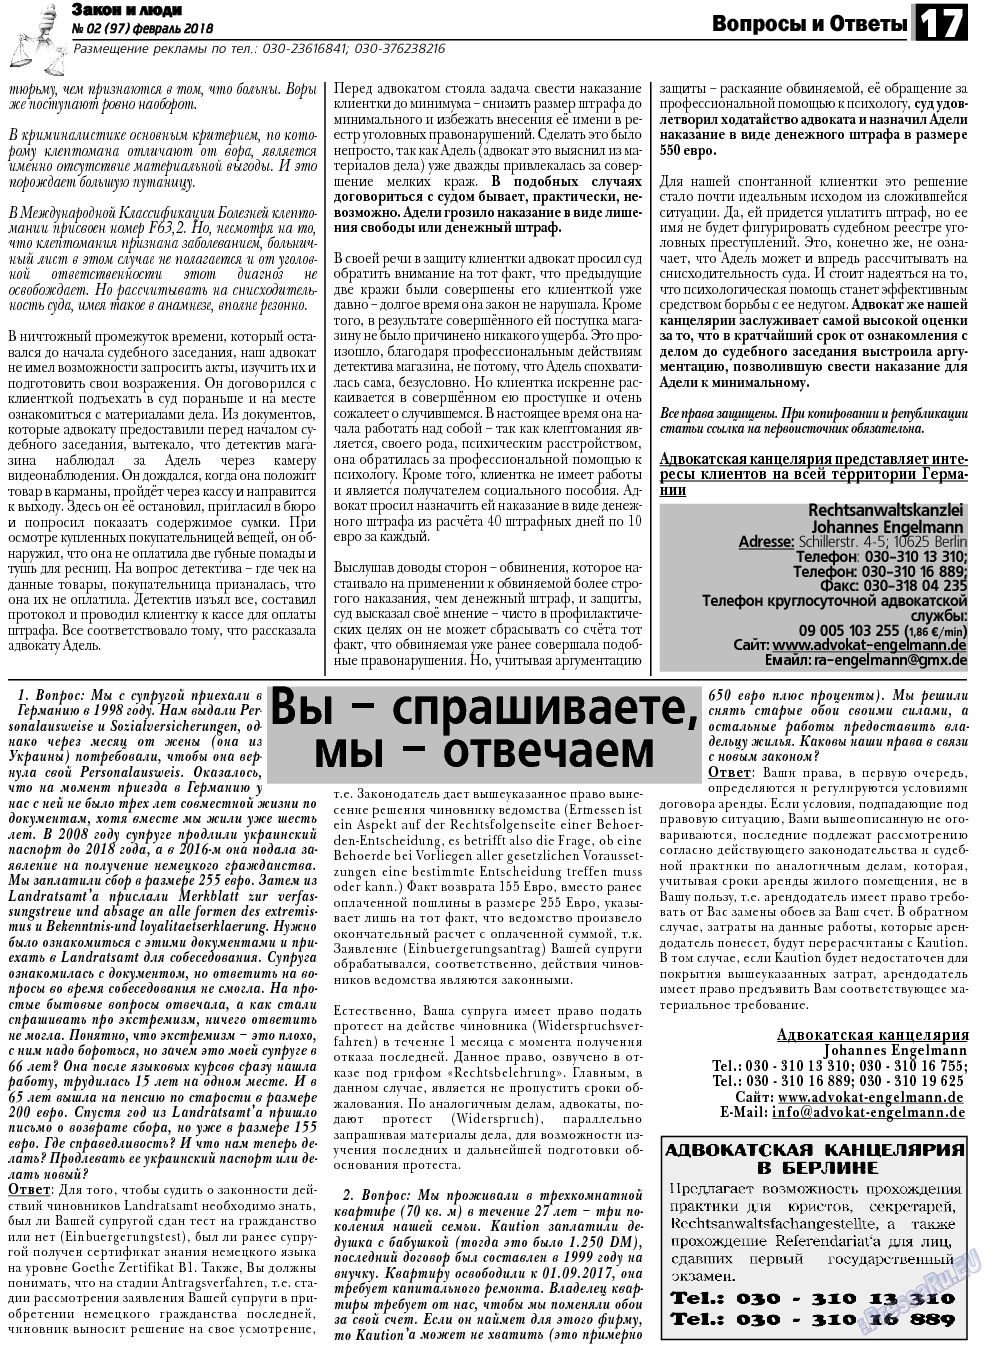 Закон и люди, газета. 2018 №2 стр.17